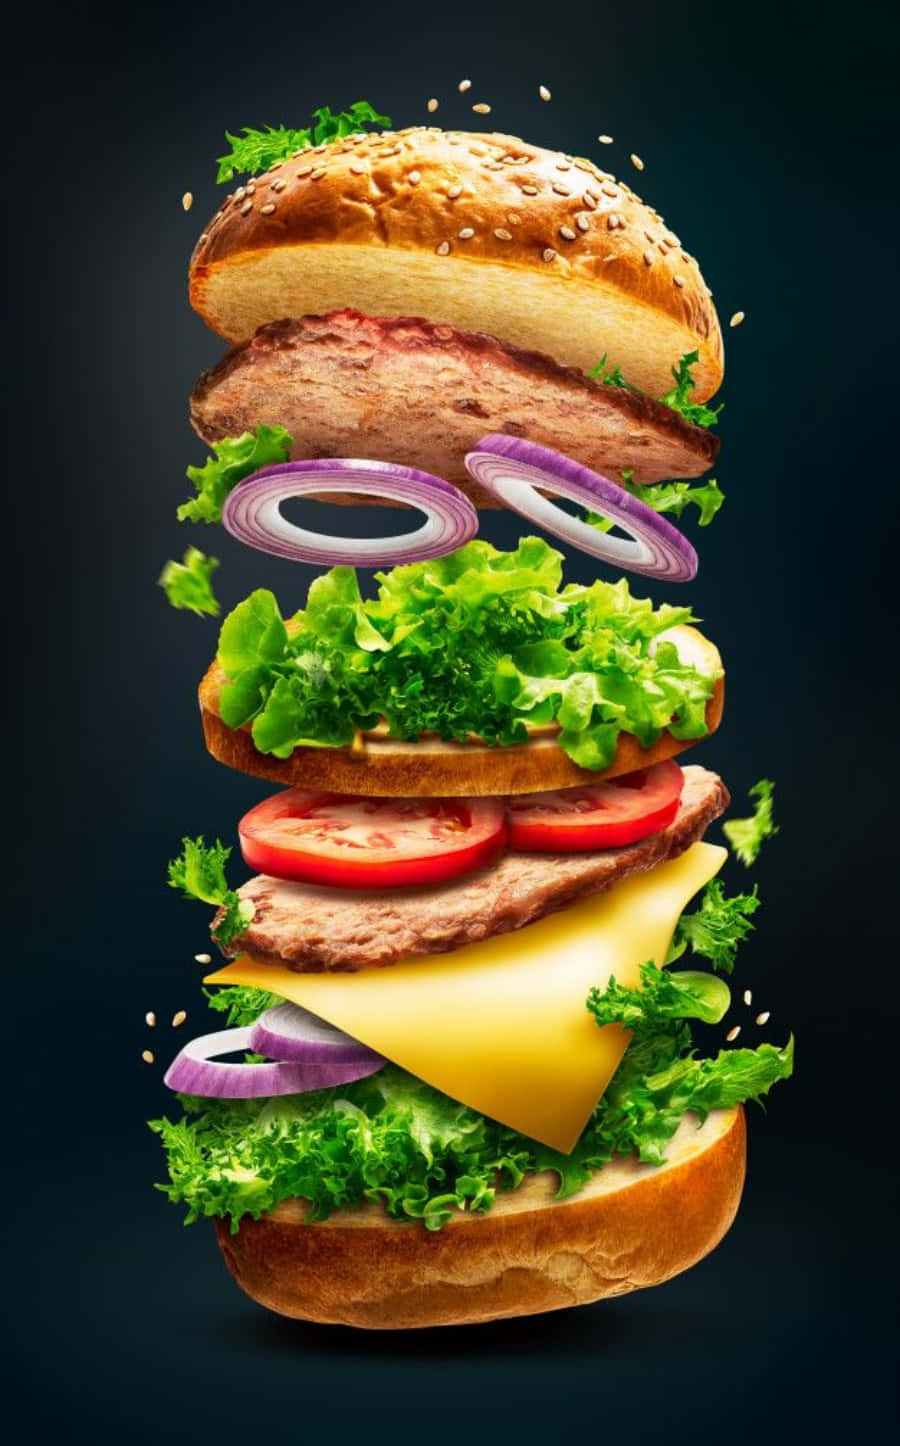 Prodottoimmagine Di Un Hamburger